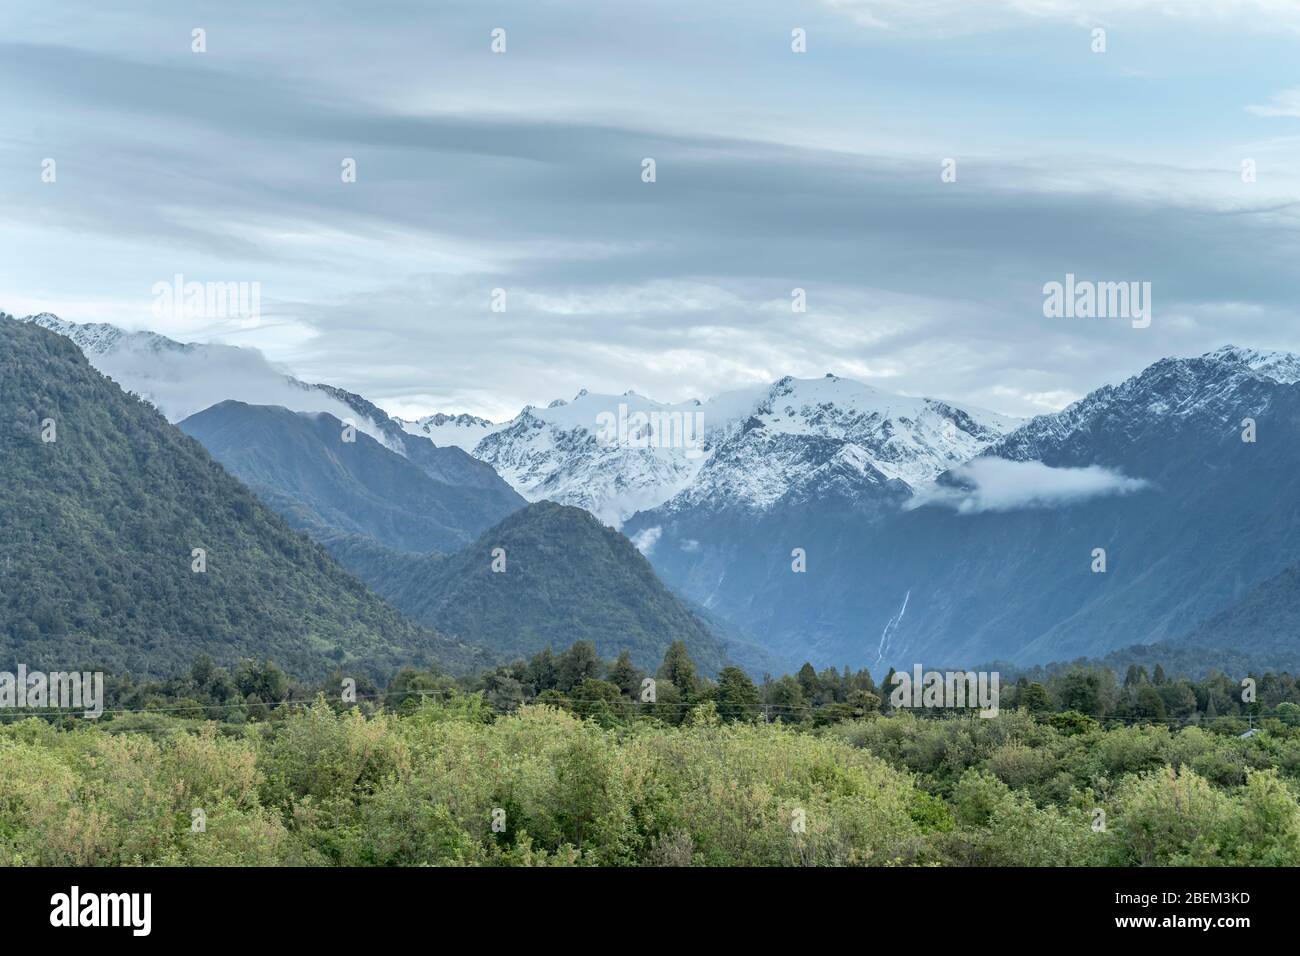 Paisaje con pendientes nevadas de Roon picos de bosque verde, filmado con luz brillante de primavera en Franz Josef, Costa Oeste, Isla Sur, Nueva Zelanda Foto de stock